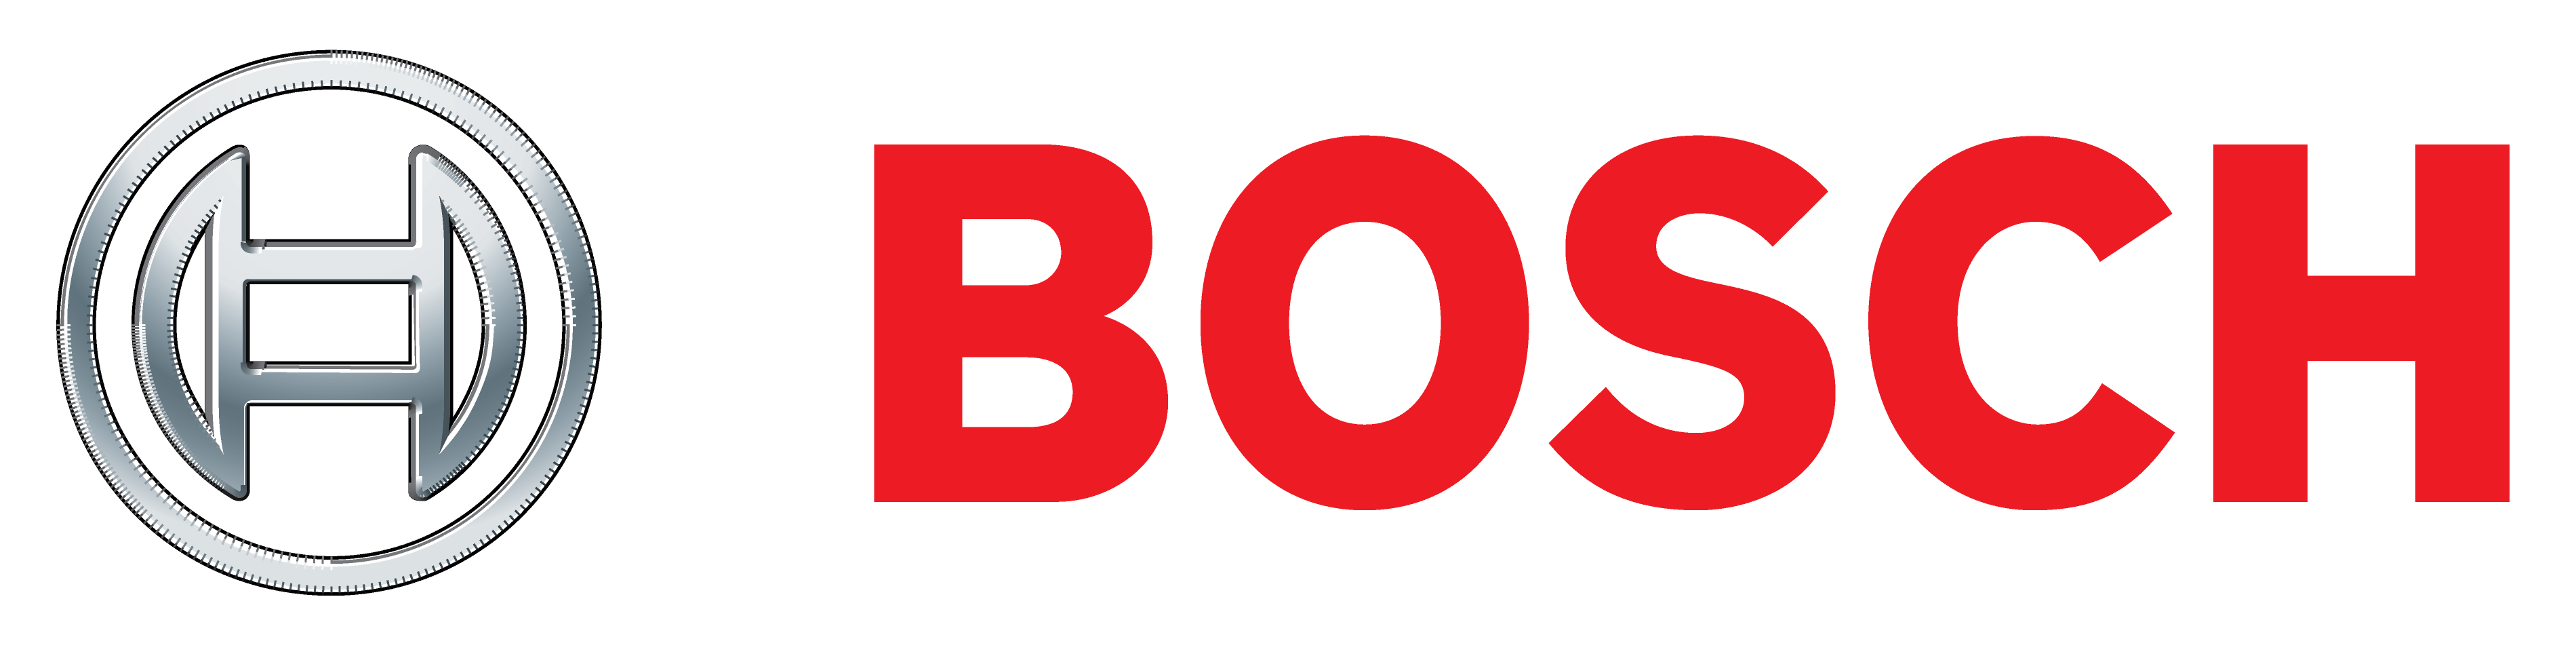 Скидка на всю оснастку Bosch 15%